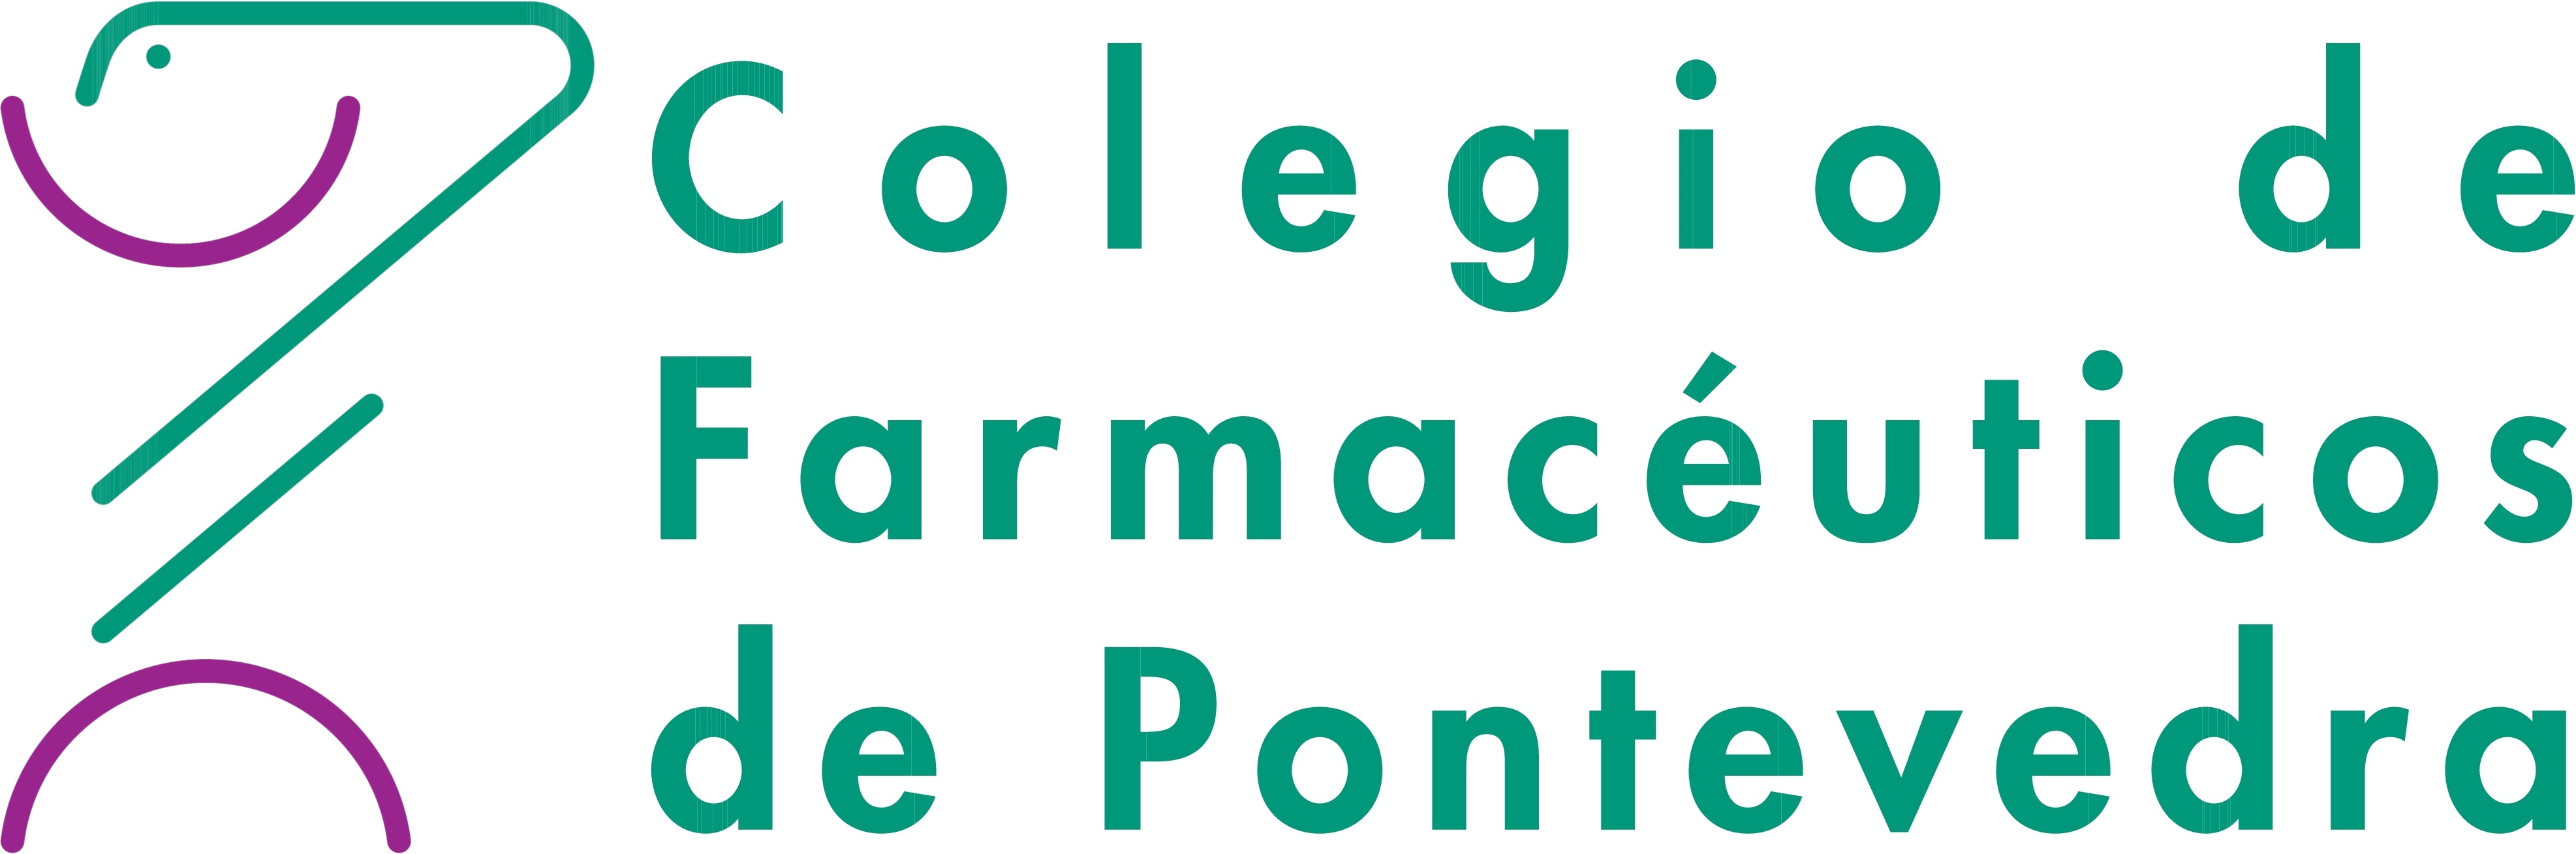 Jóvenes de 12 a 17 años objetivo del nuevo cribado covid-19 en farmacias de Pontevedra - Colegio de Farmacéuticos de Pontevedra